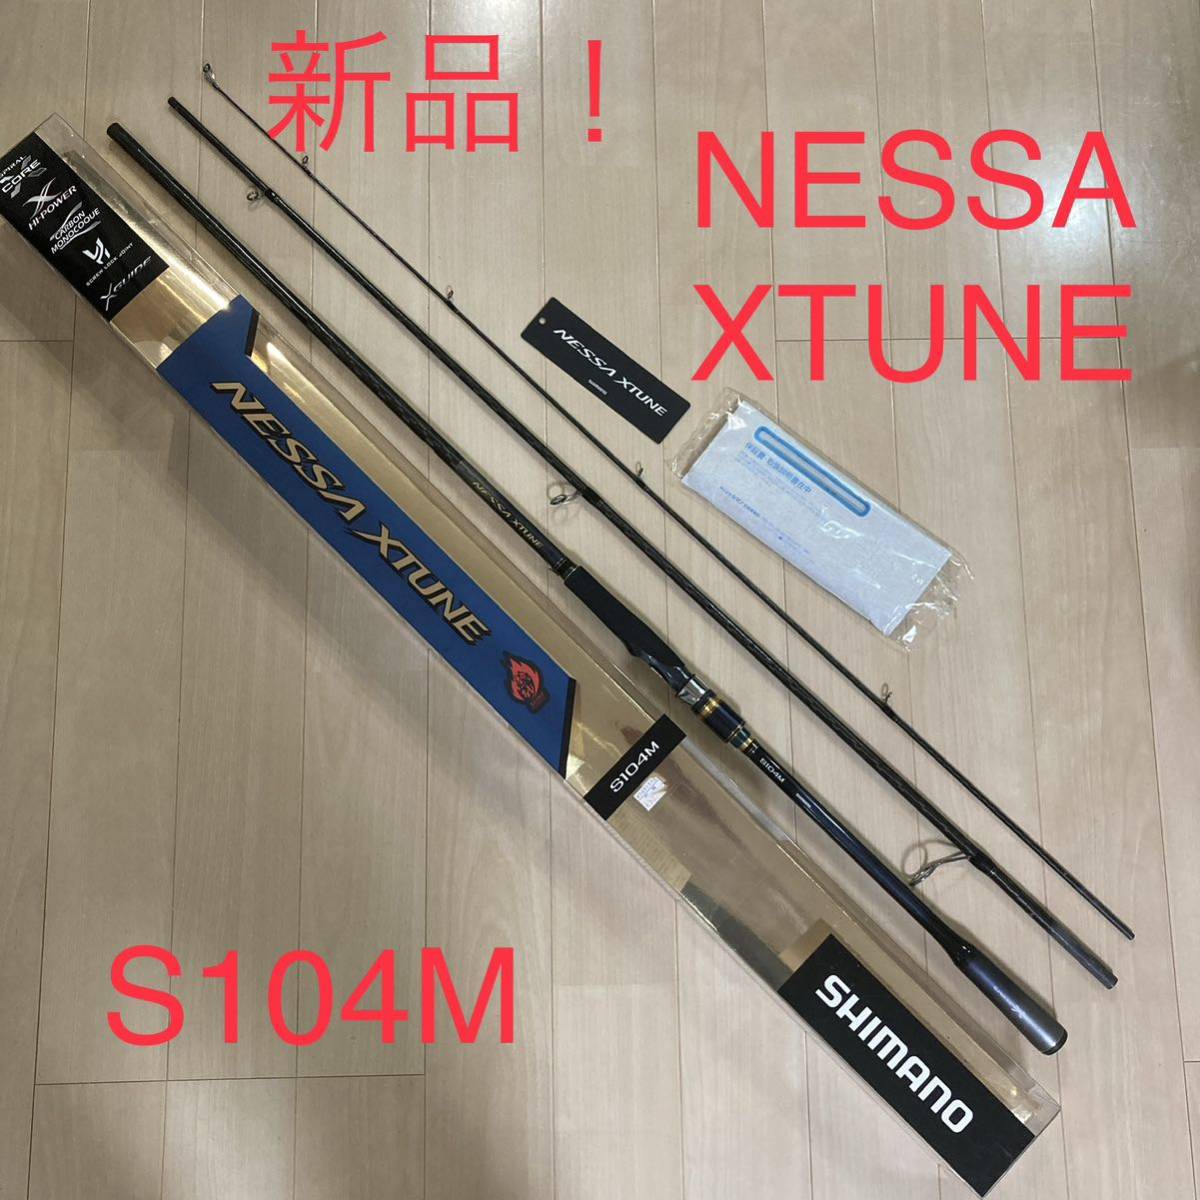 シマノ ネッサ エクスチューン NESSA XTUNE S104M新品 未使用 ヒラメ ショア ジギング サーフ フィッシング